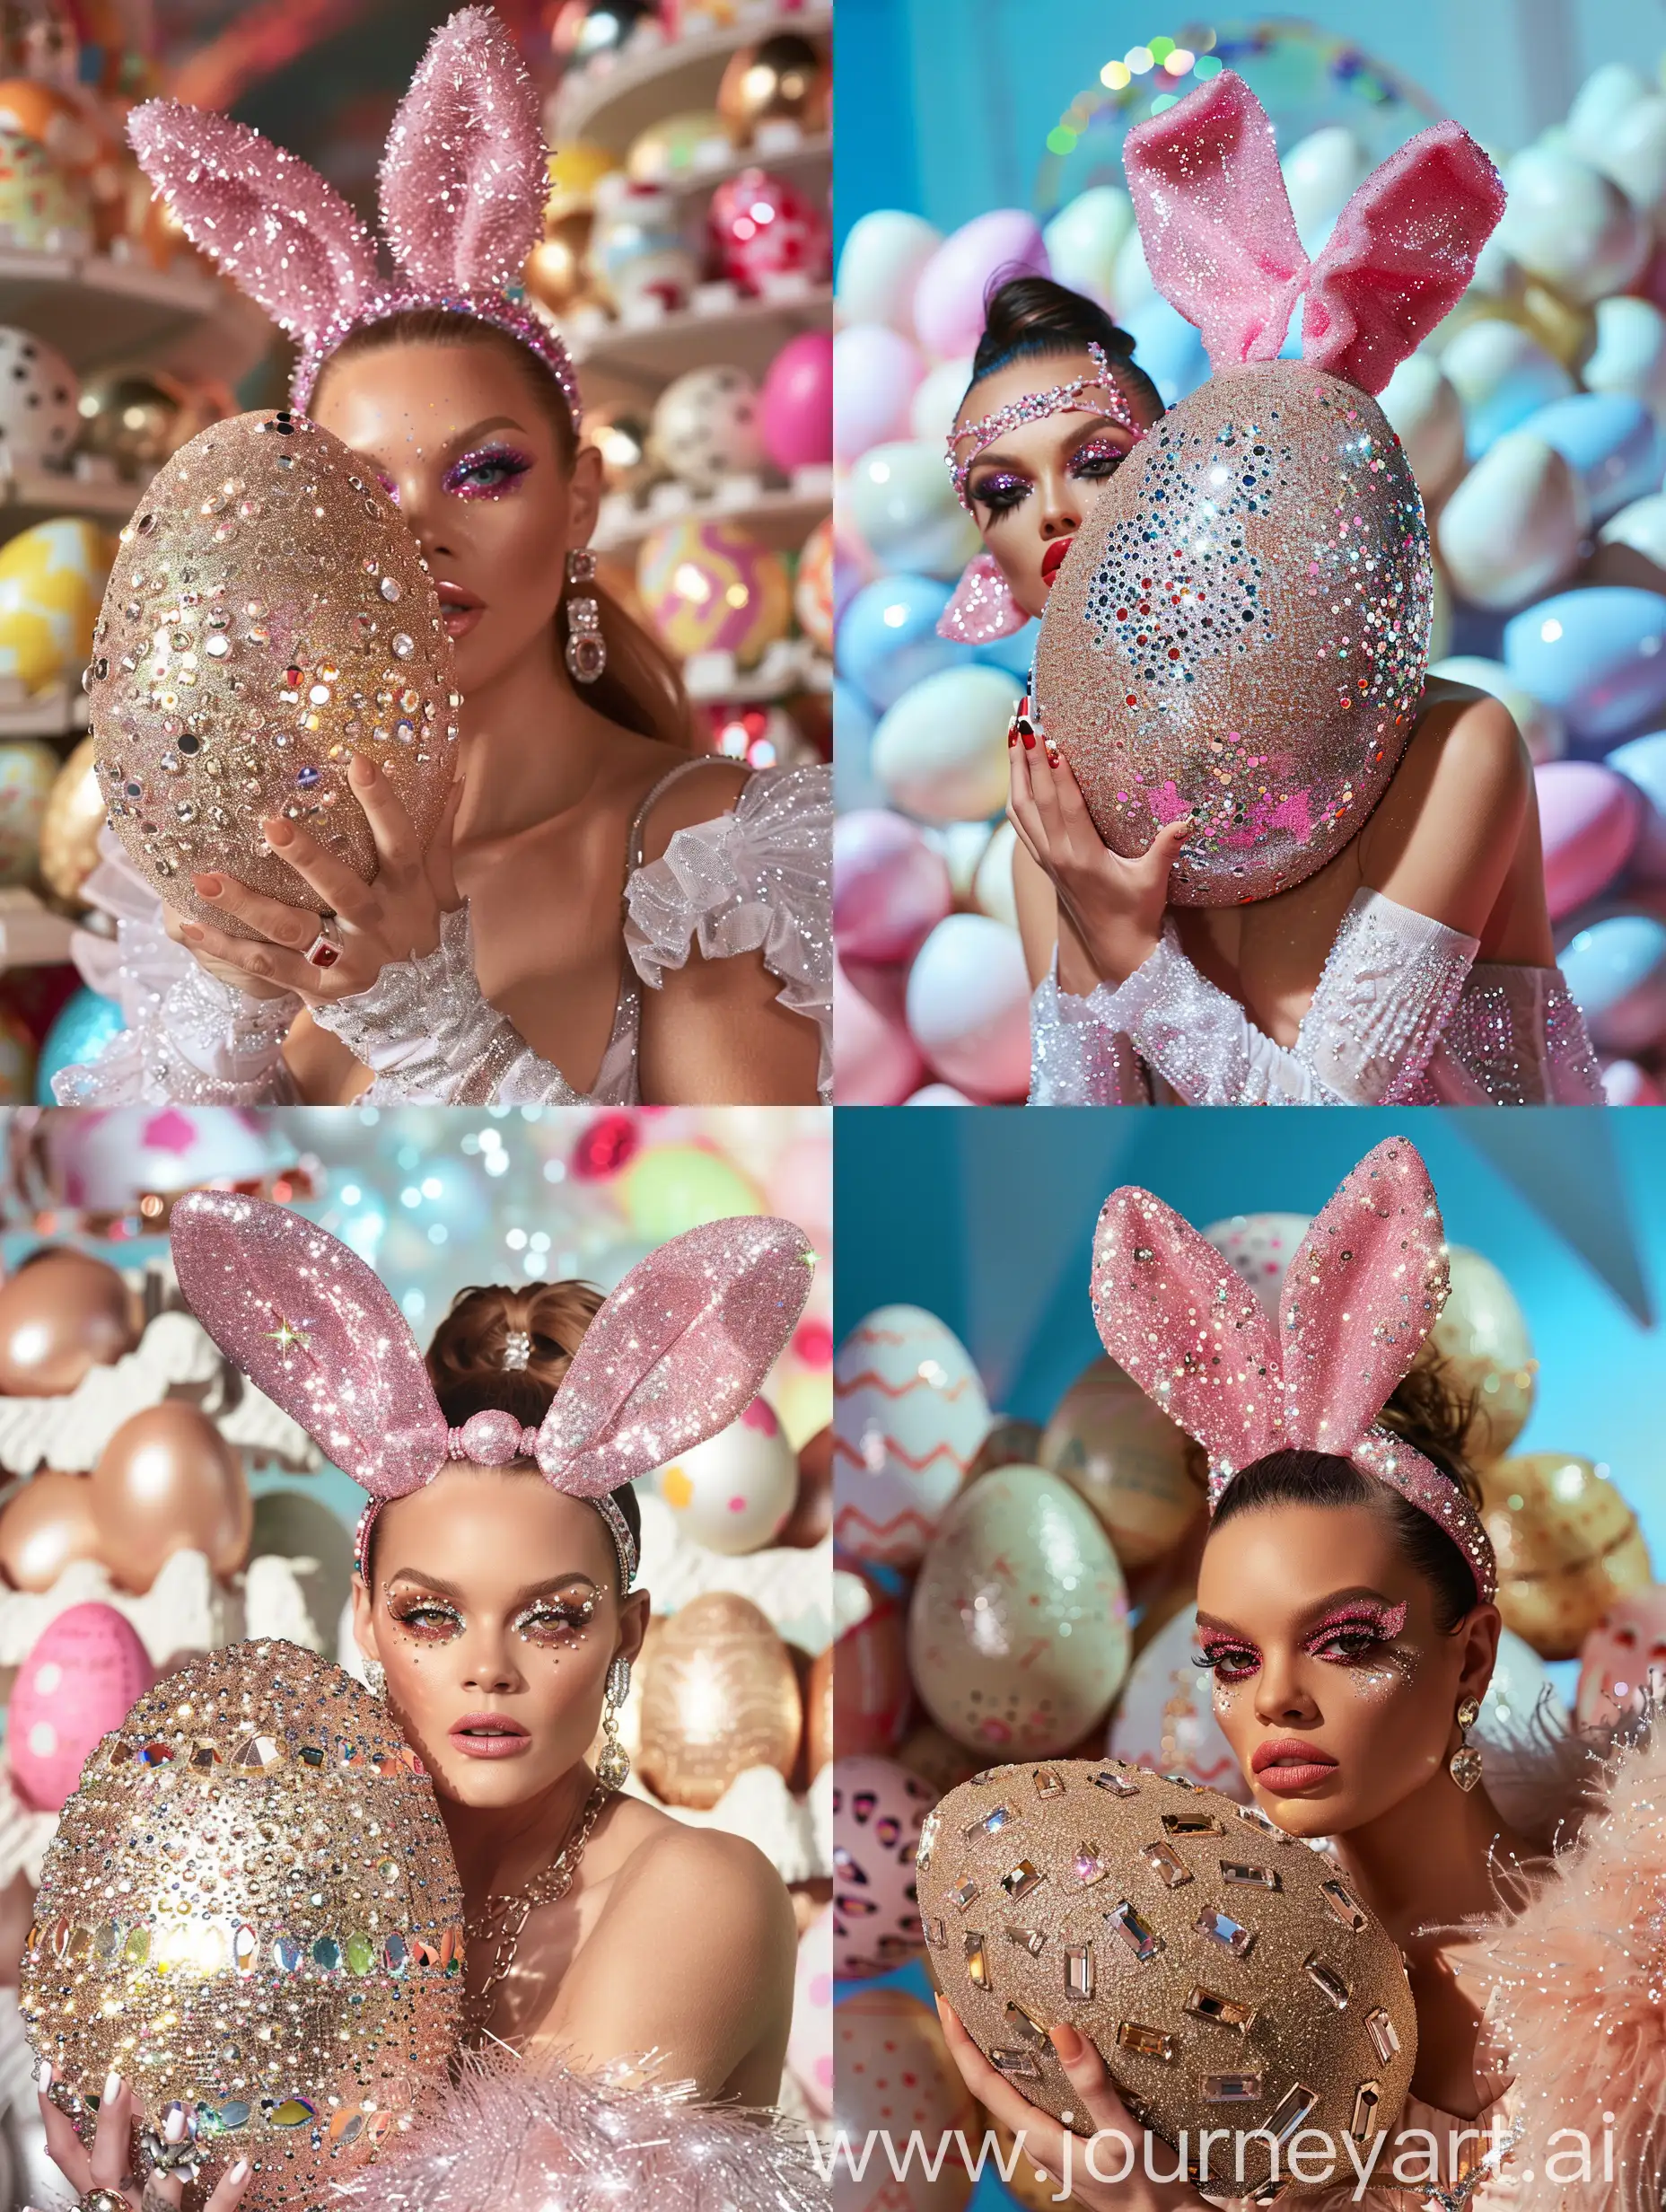 crea foto di modella che sembra Rita ora, con cerchietto a forma di orecchie di coniglio rosa glitterate, vestita alla moda, tiene in mano un immenso uovo di pasqua ricoperto di strass e brillantini, è truccata con ombretto scintillante, rossetto, sullo sfondo ci sono uova di pasqua, realistica